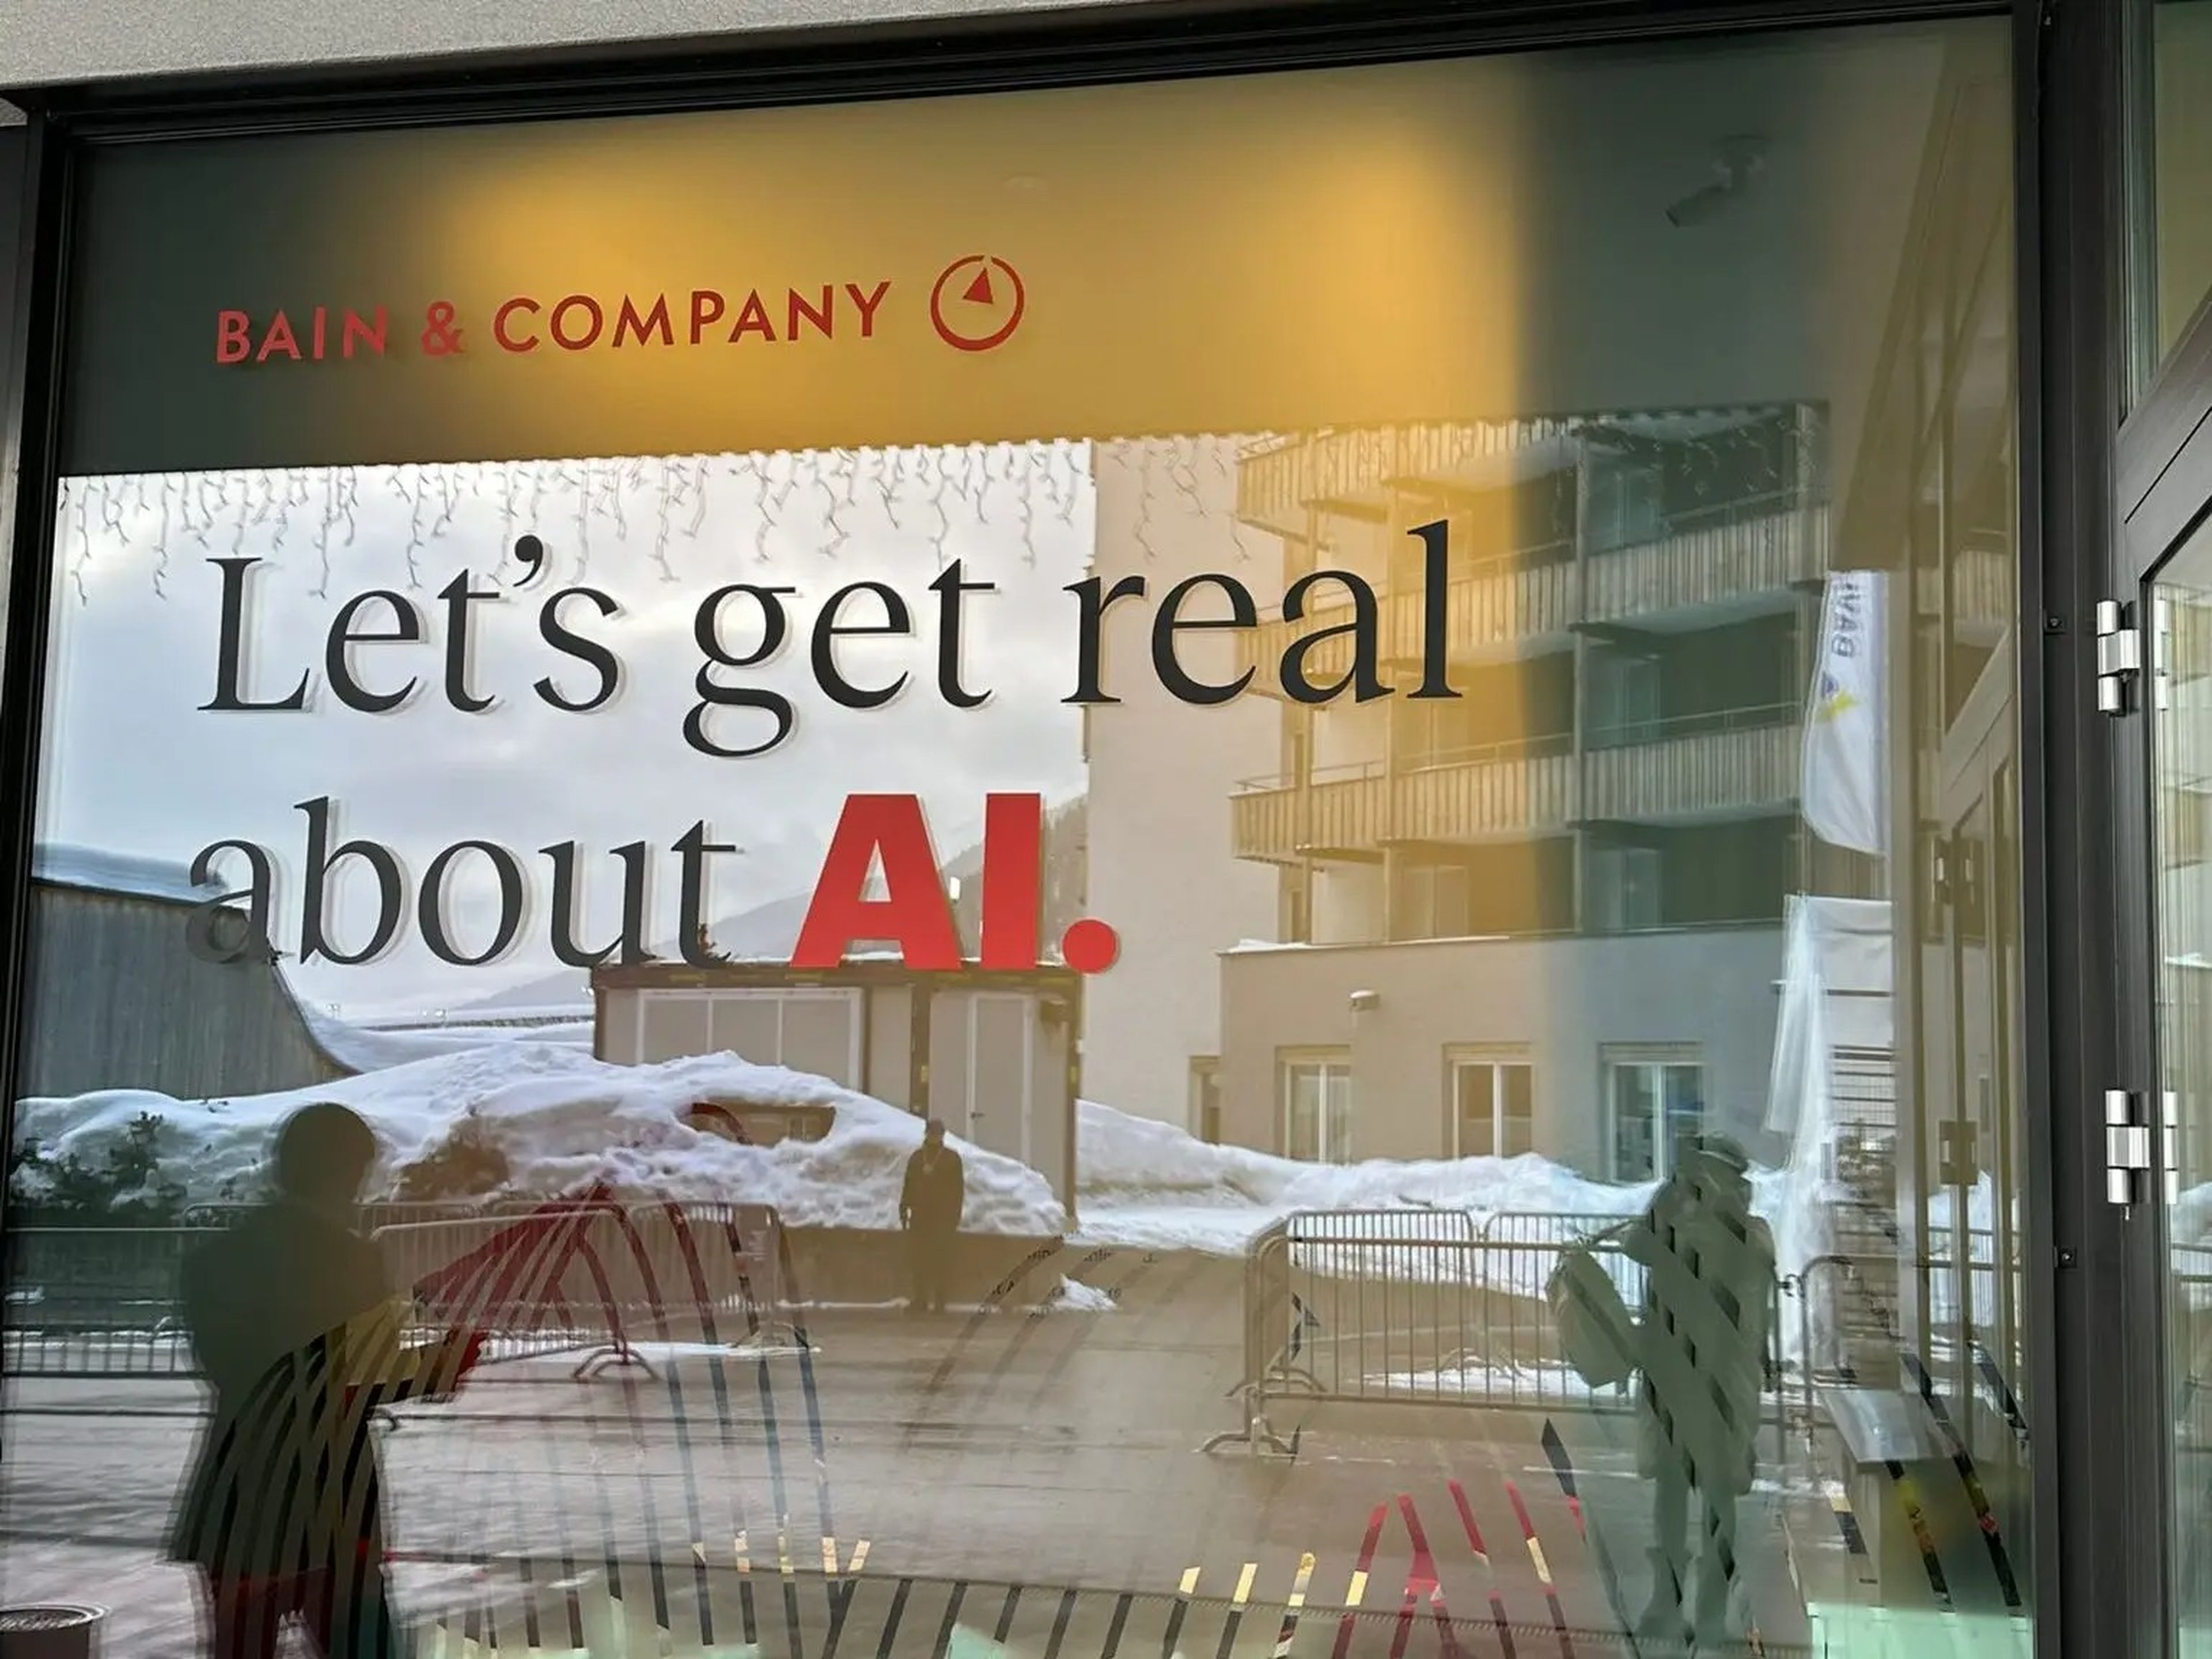 La consultora Bain quiere empezar a tomar decisiones reales y concretas en lo que se refiere al empleo de la IA.